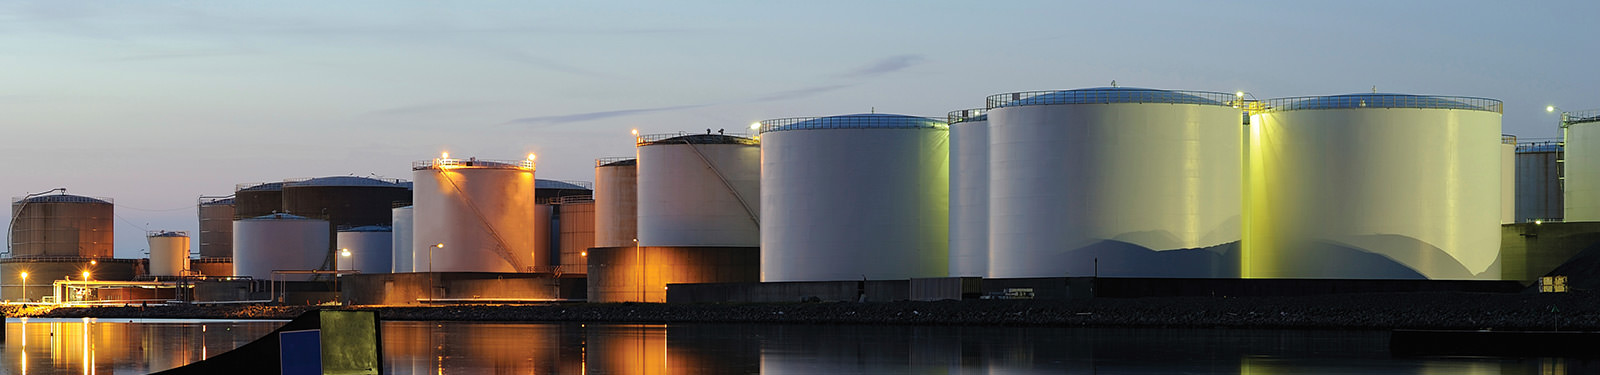 Pressure Management - Oil & Gas Storage